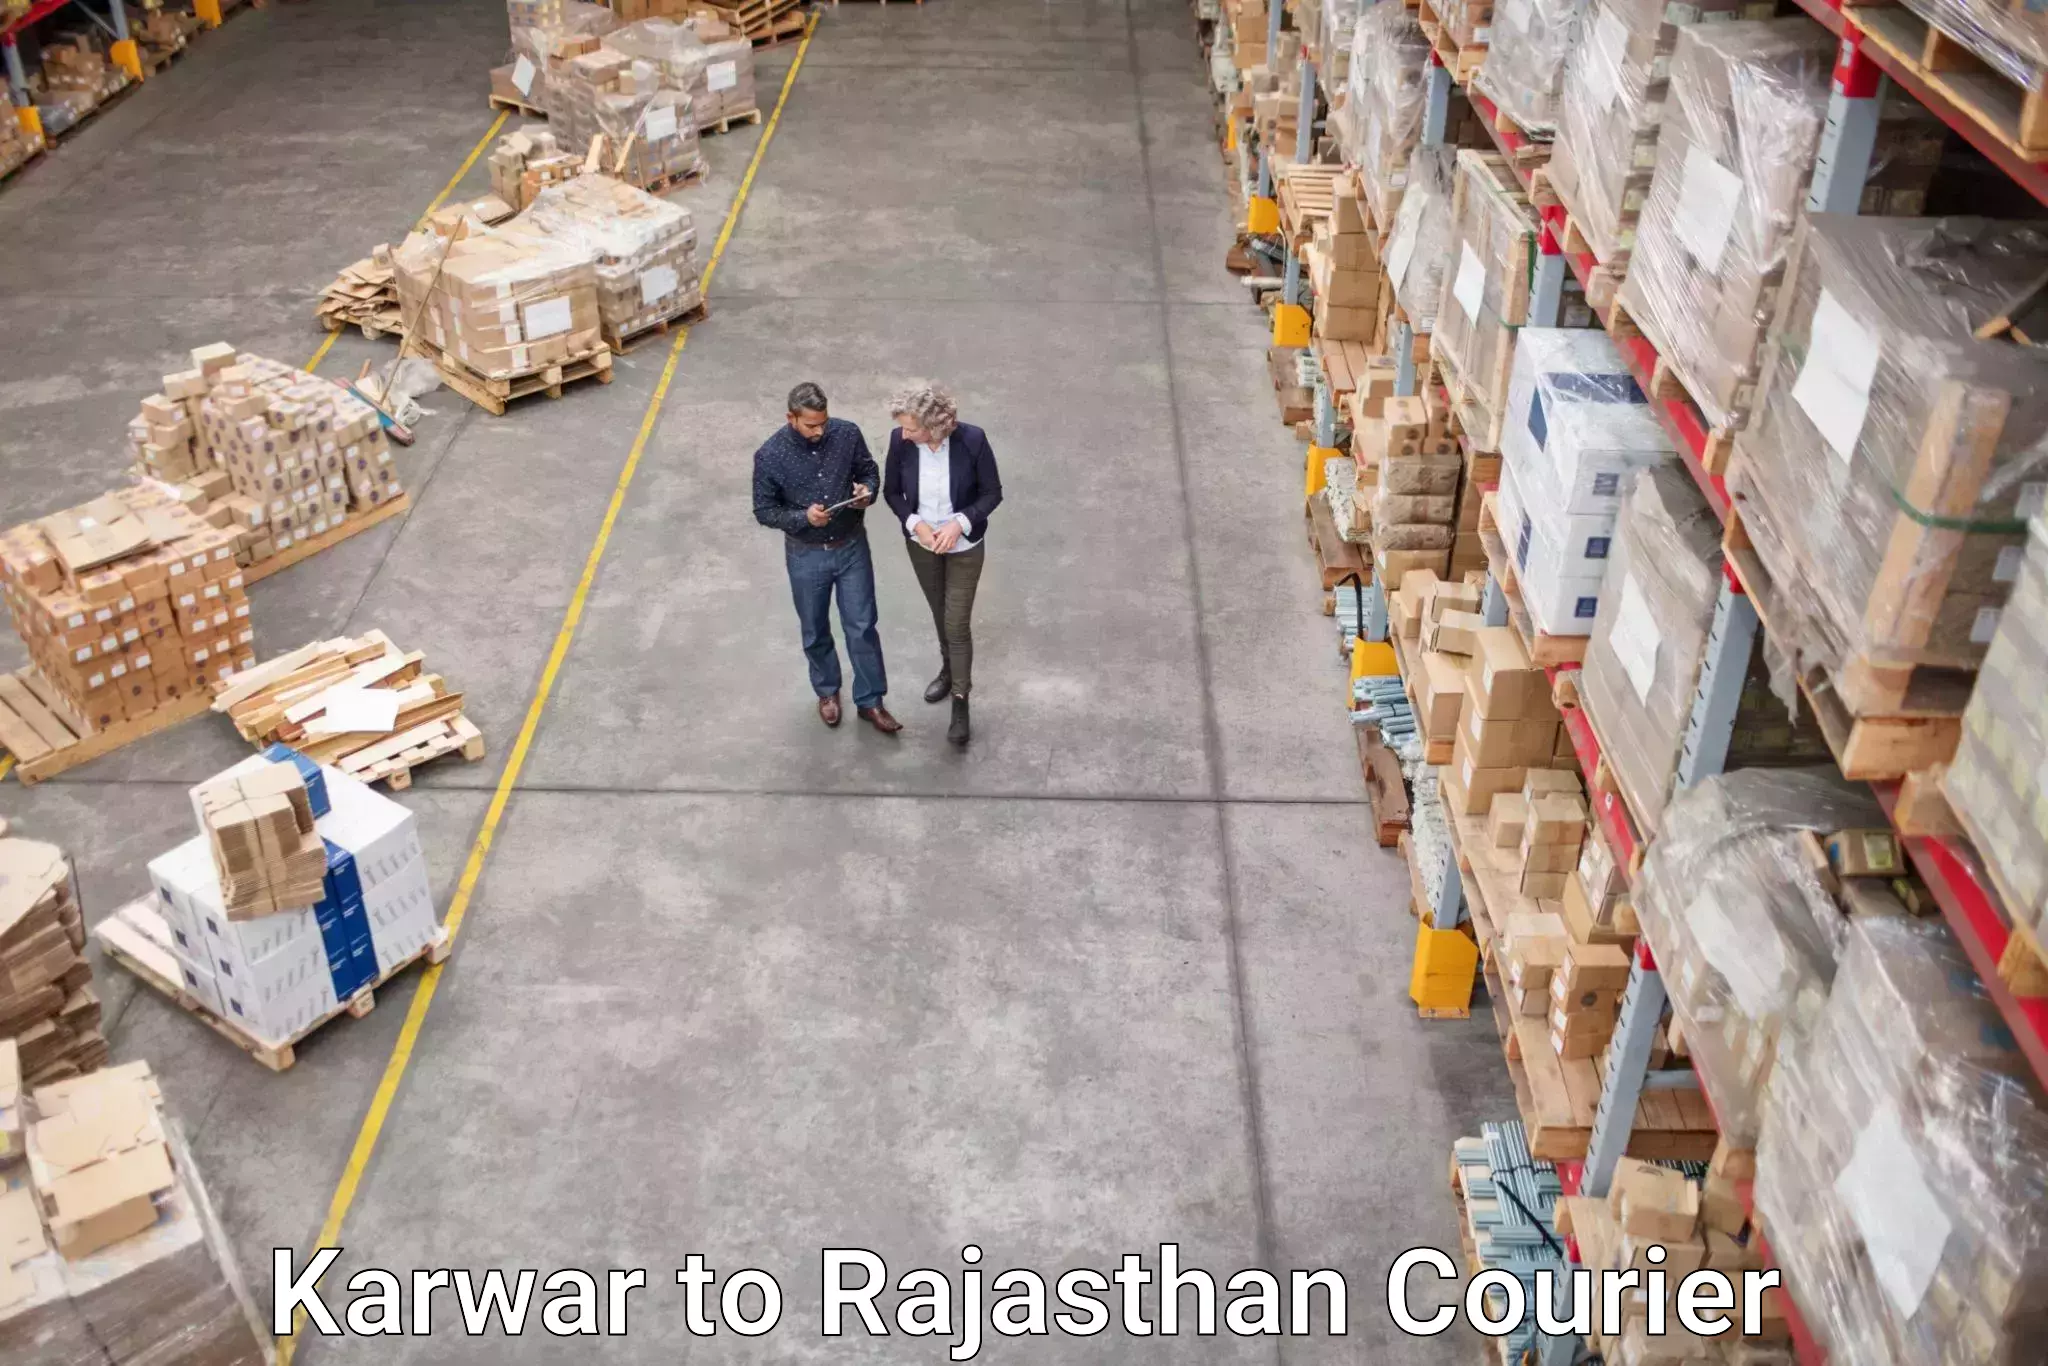 Rapid shipping services Karwar to Kota